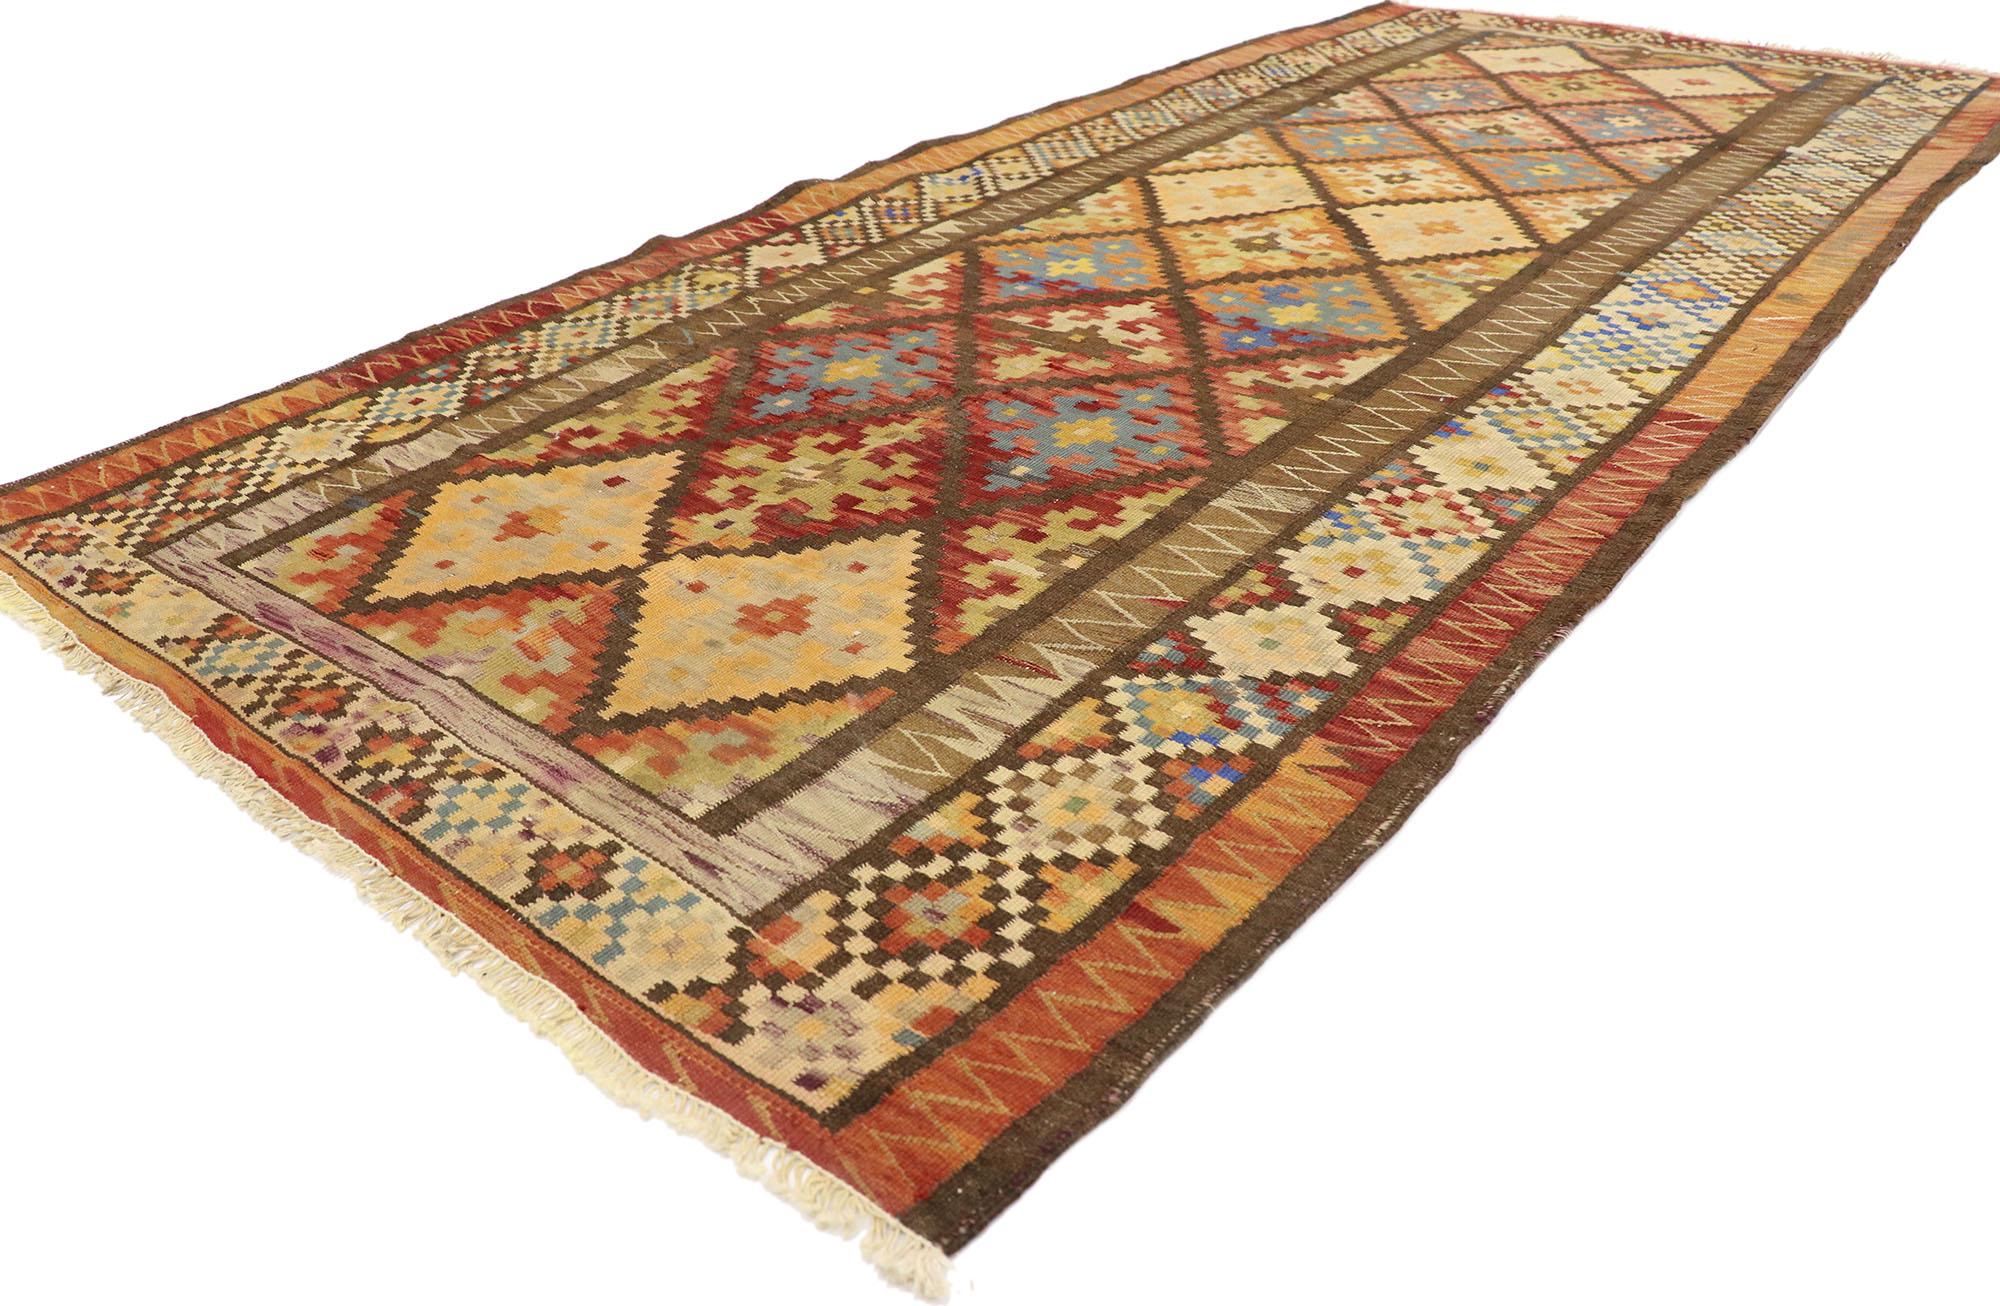 78001 Persischer Bijar-Kilim-Teppich, 03'11 x 09'00, Vintage.
Lassen Sie sich von diesem meisterhaft handgewebten persischen Shiraz-Kelim-Teppich aus Wolle in eine zauberhafte Geschichte verwickeln. Stellen Sie sich einen nomadischen Kunsthandwerker